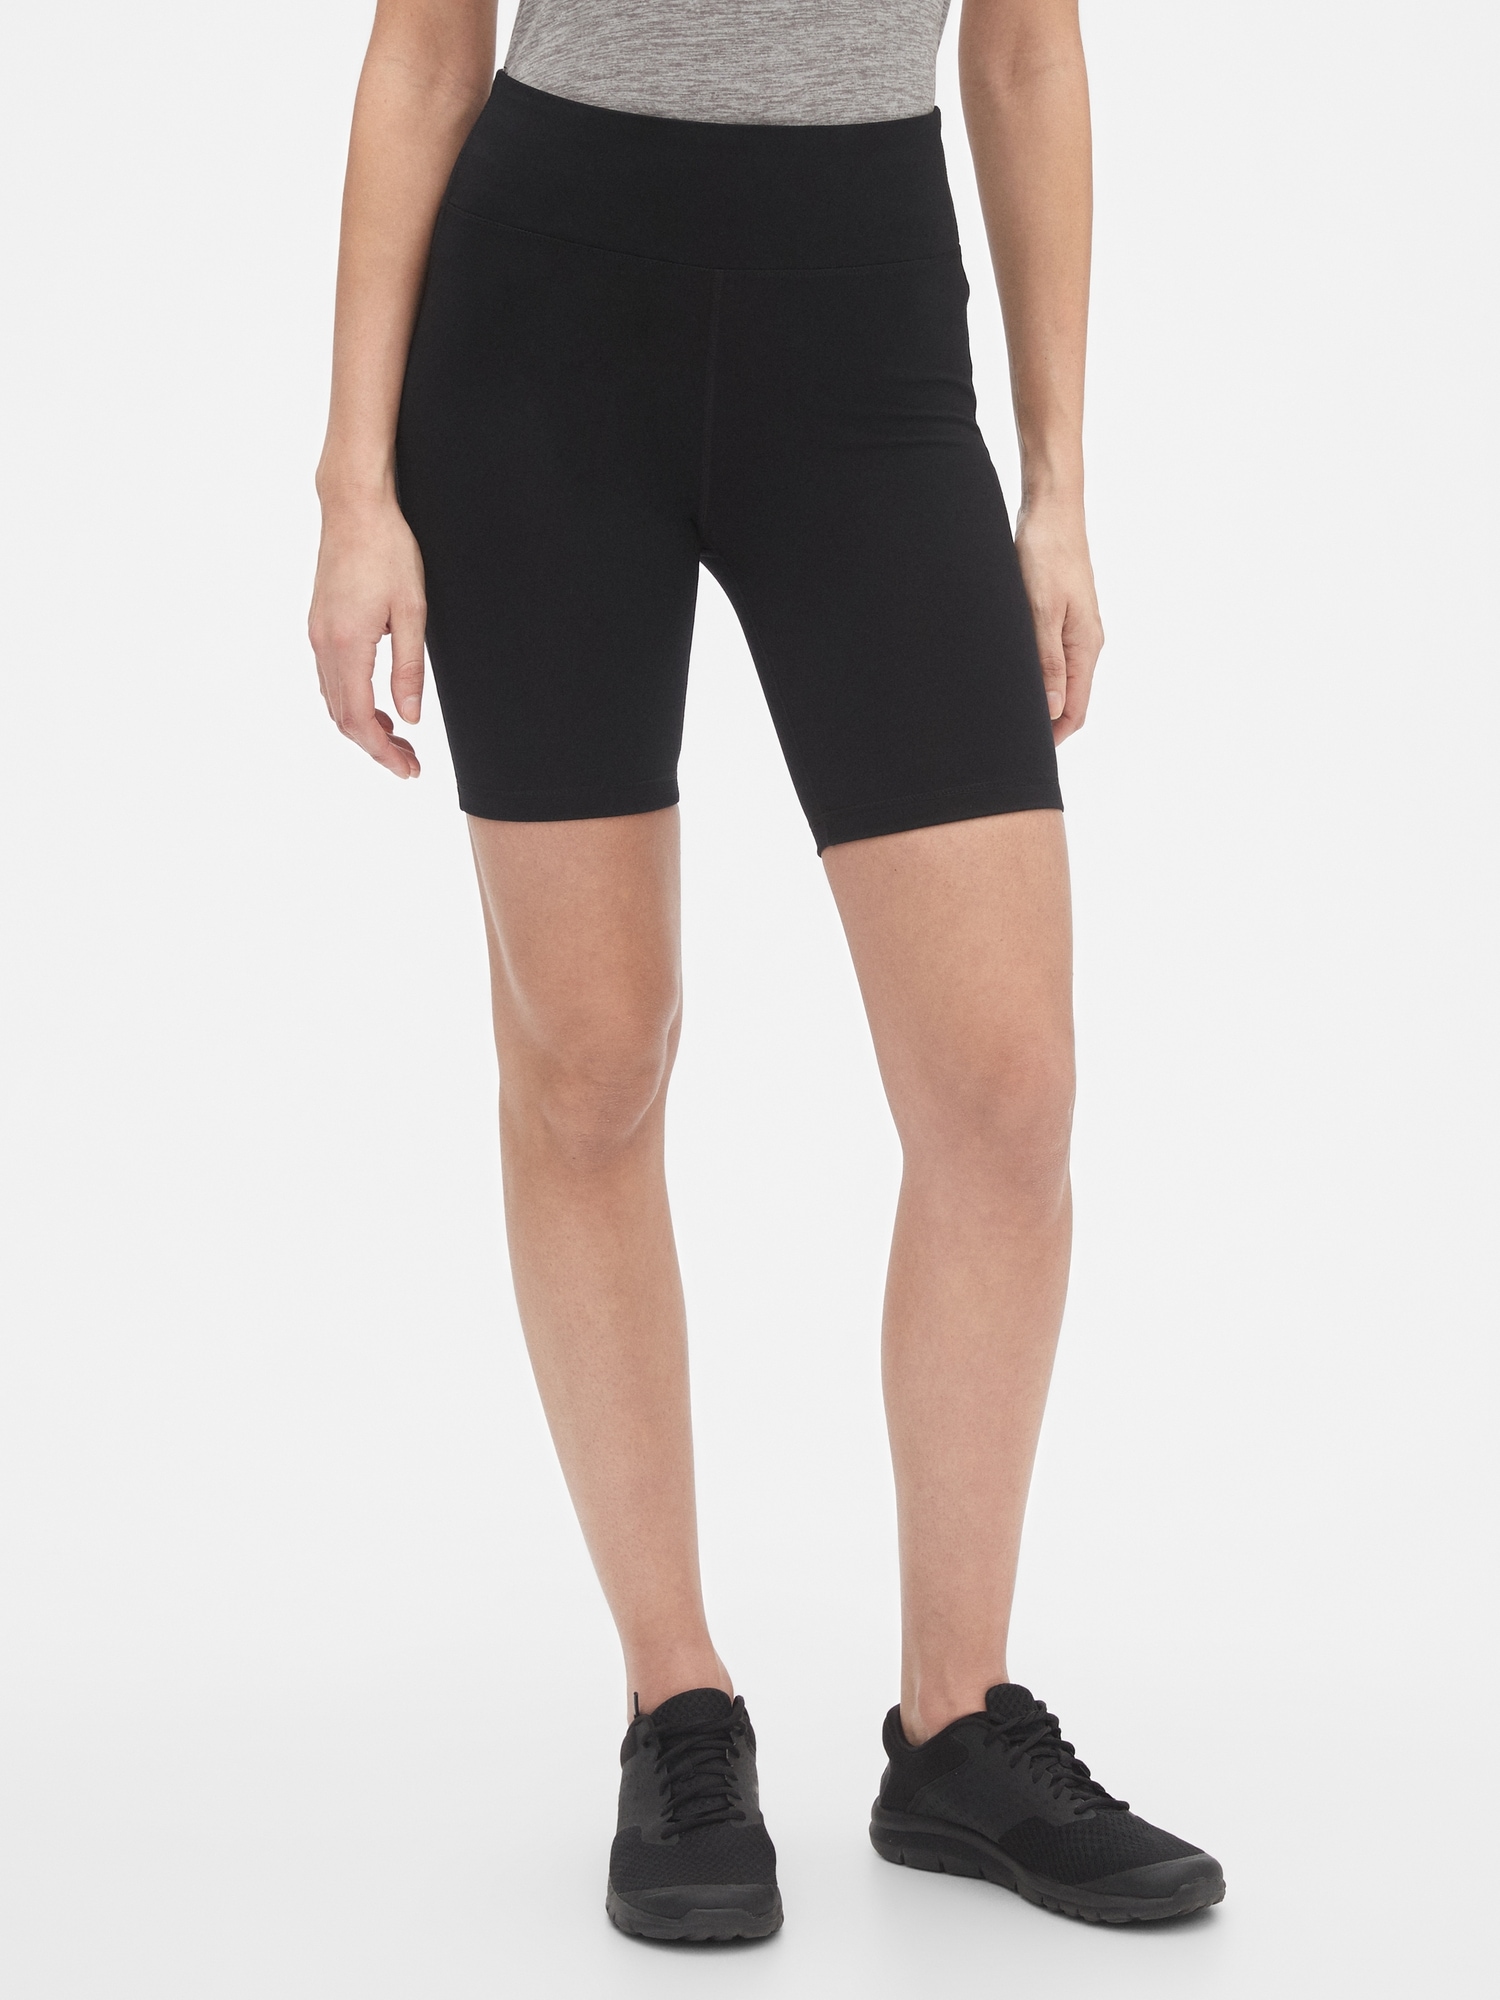 gap bike shorts